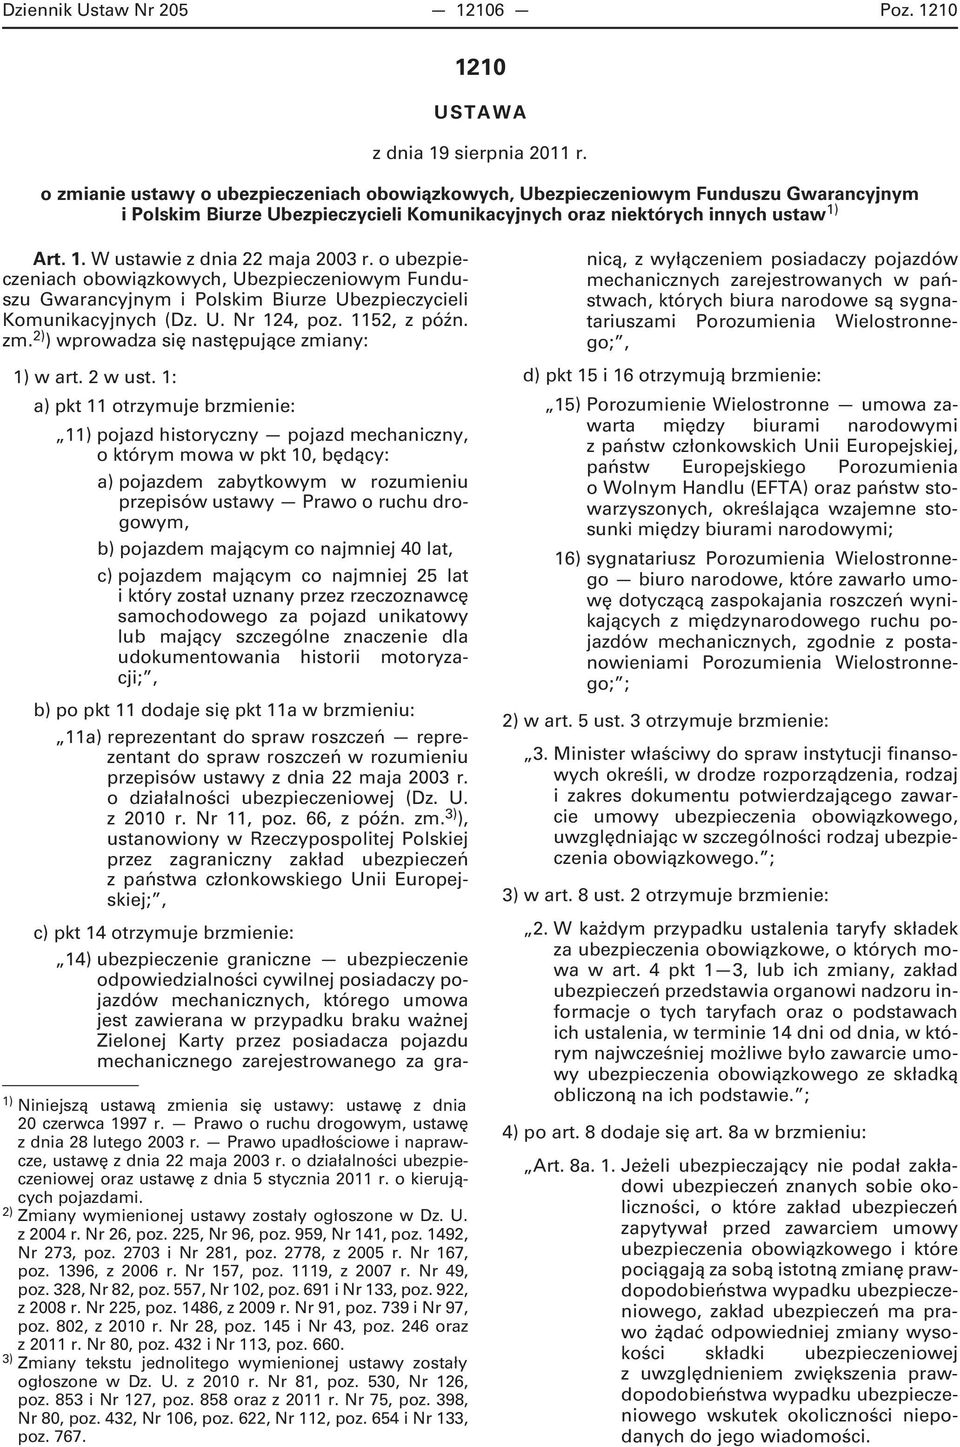 Art. 1. W ustawie z dnia 22 maja 2003 r. o ubezpieczeniach obowiązkowych, Ubezpieczeniowym Funduszu Gwarancyjnym i Polskim Biurze Ubezpieczycieli Komunikacyjnych (Dz. U. Nr 124, poz. 1152, z późn. zm.